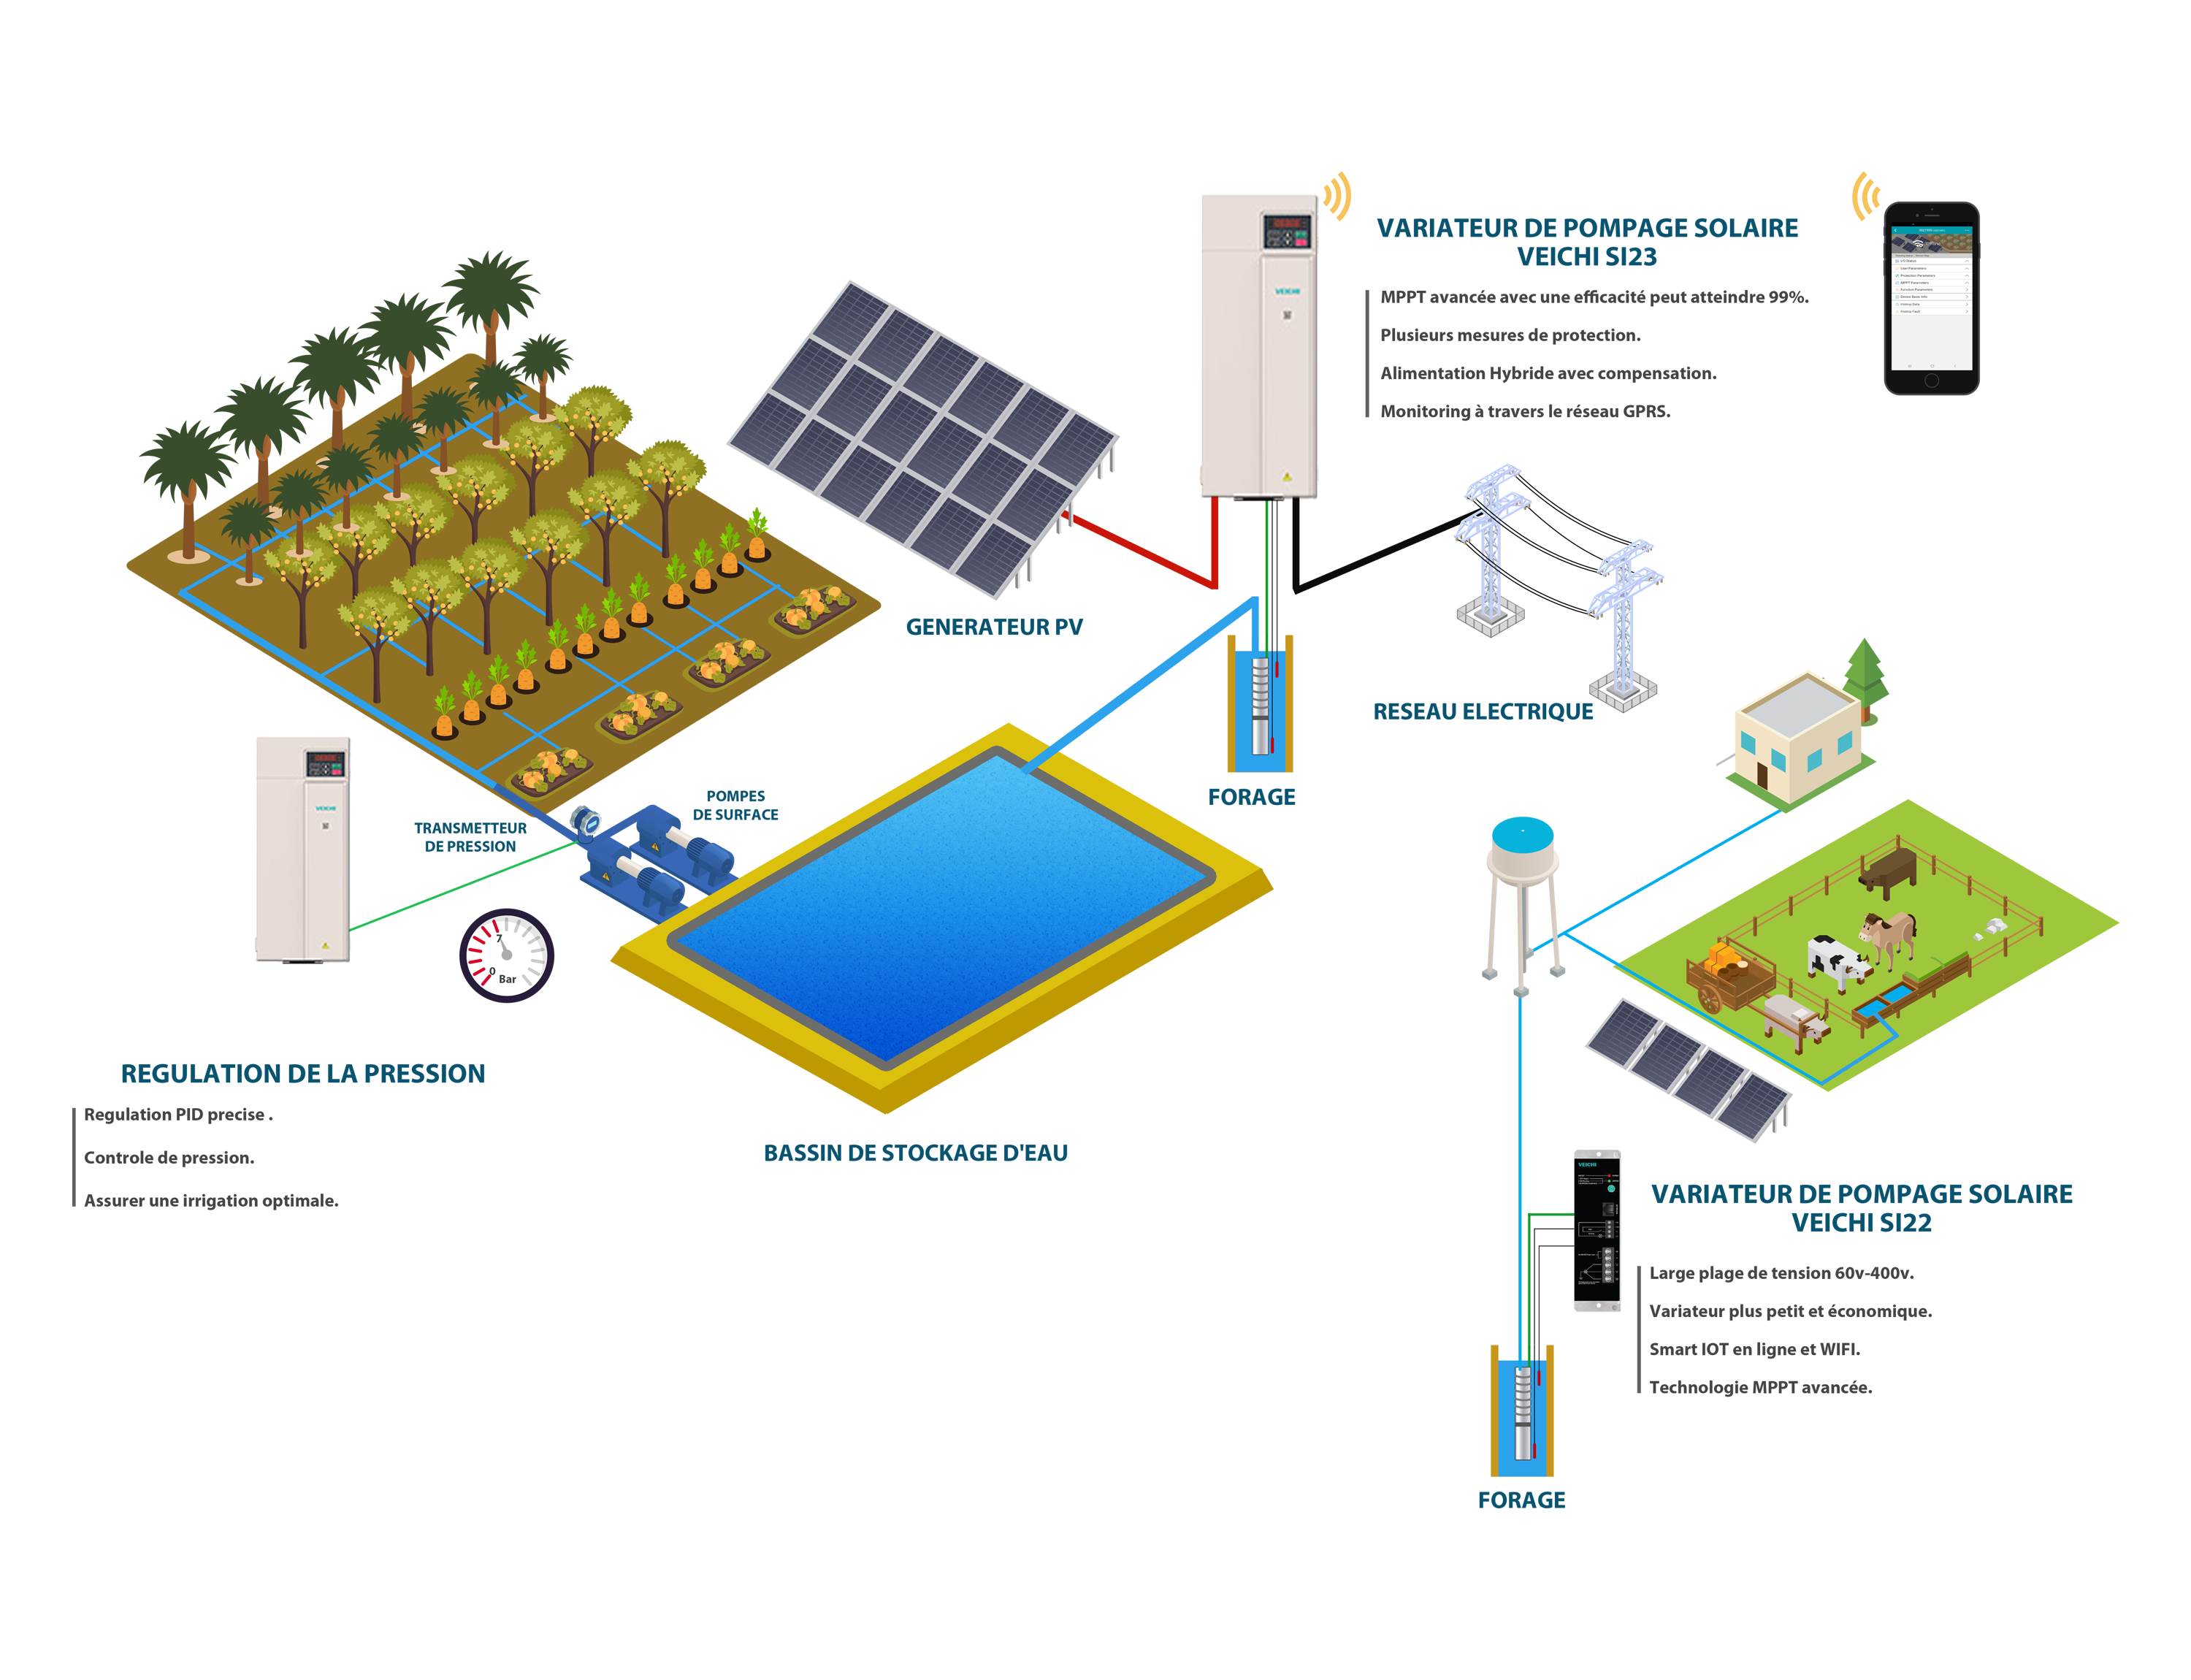 Pompe arrosage - Une solution solaire et écologique